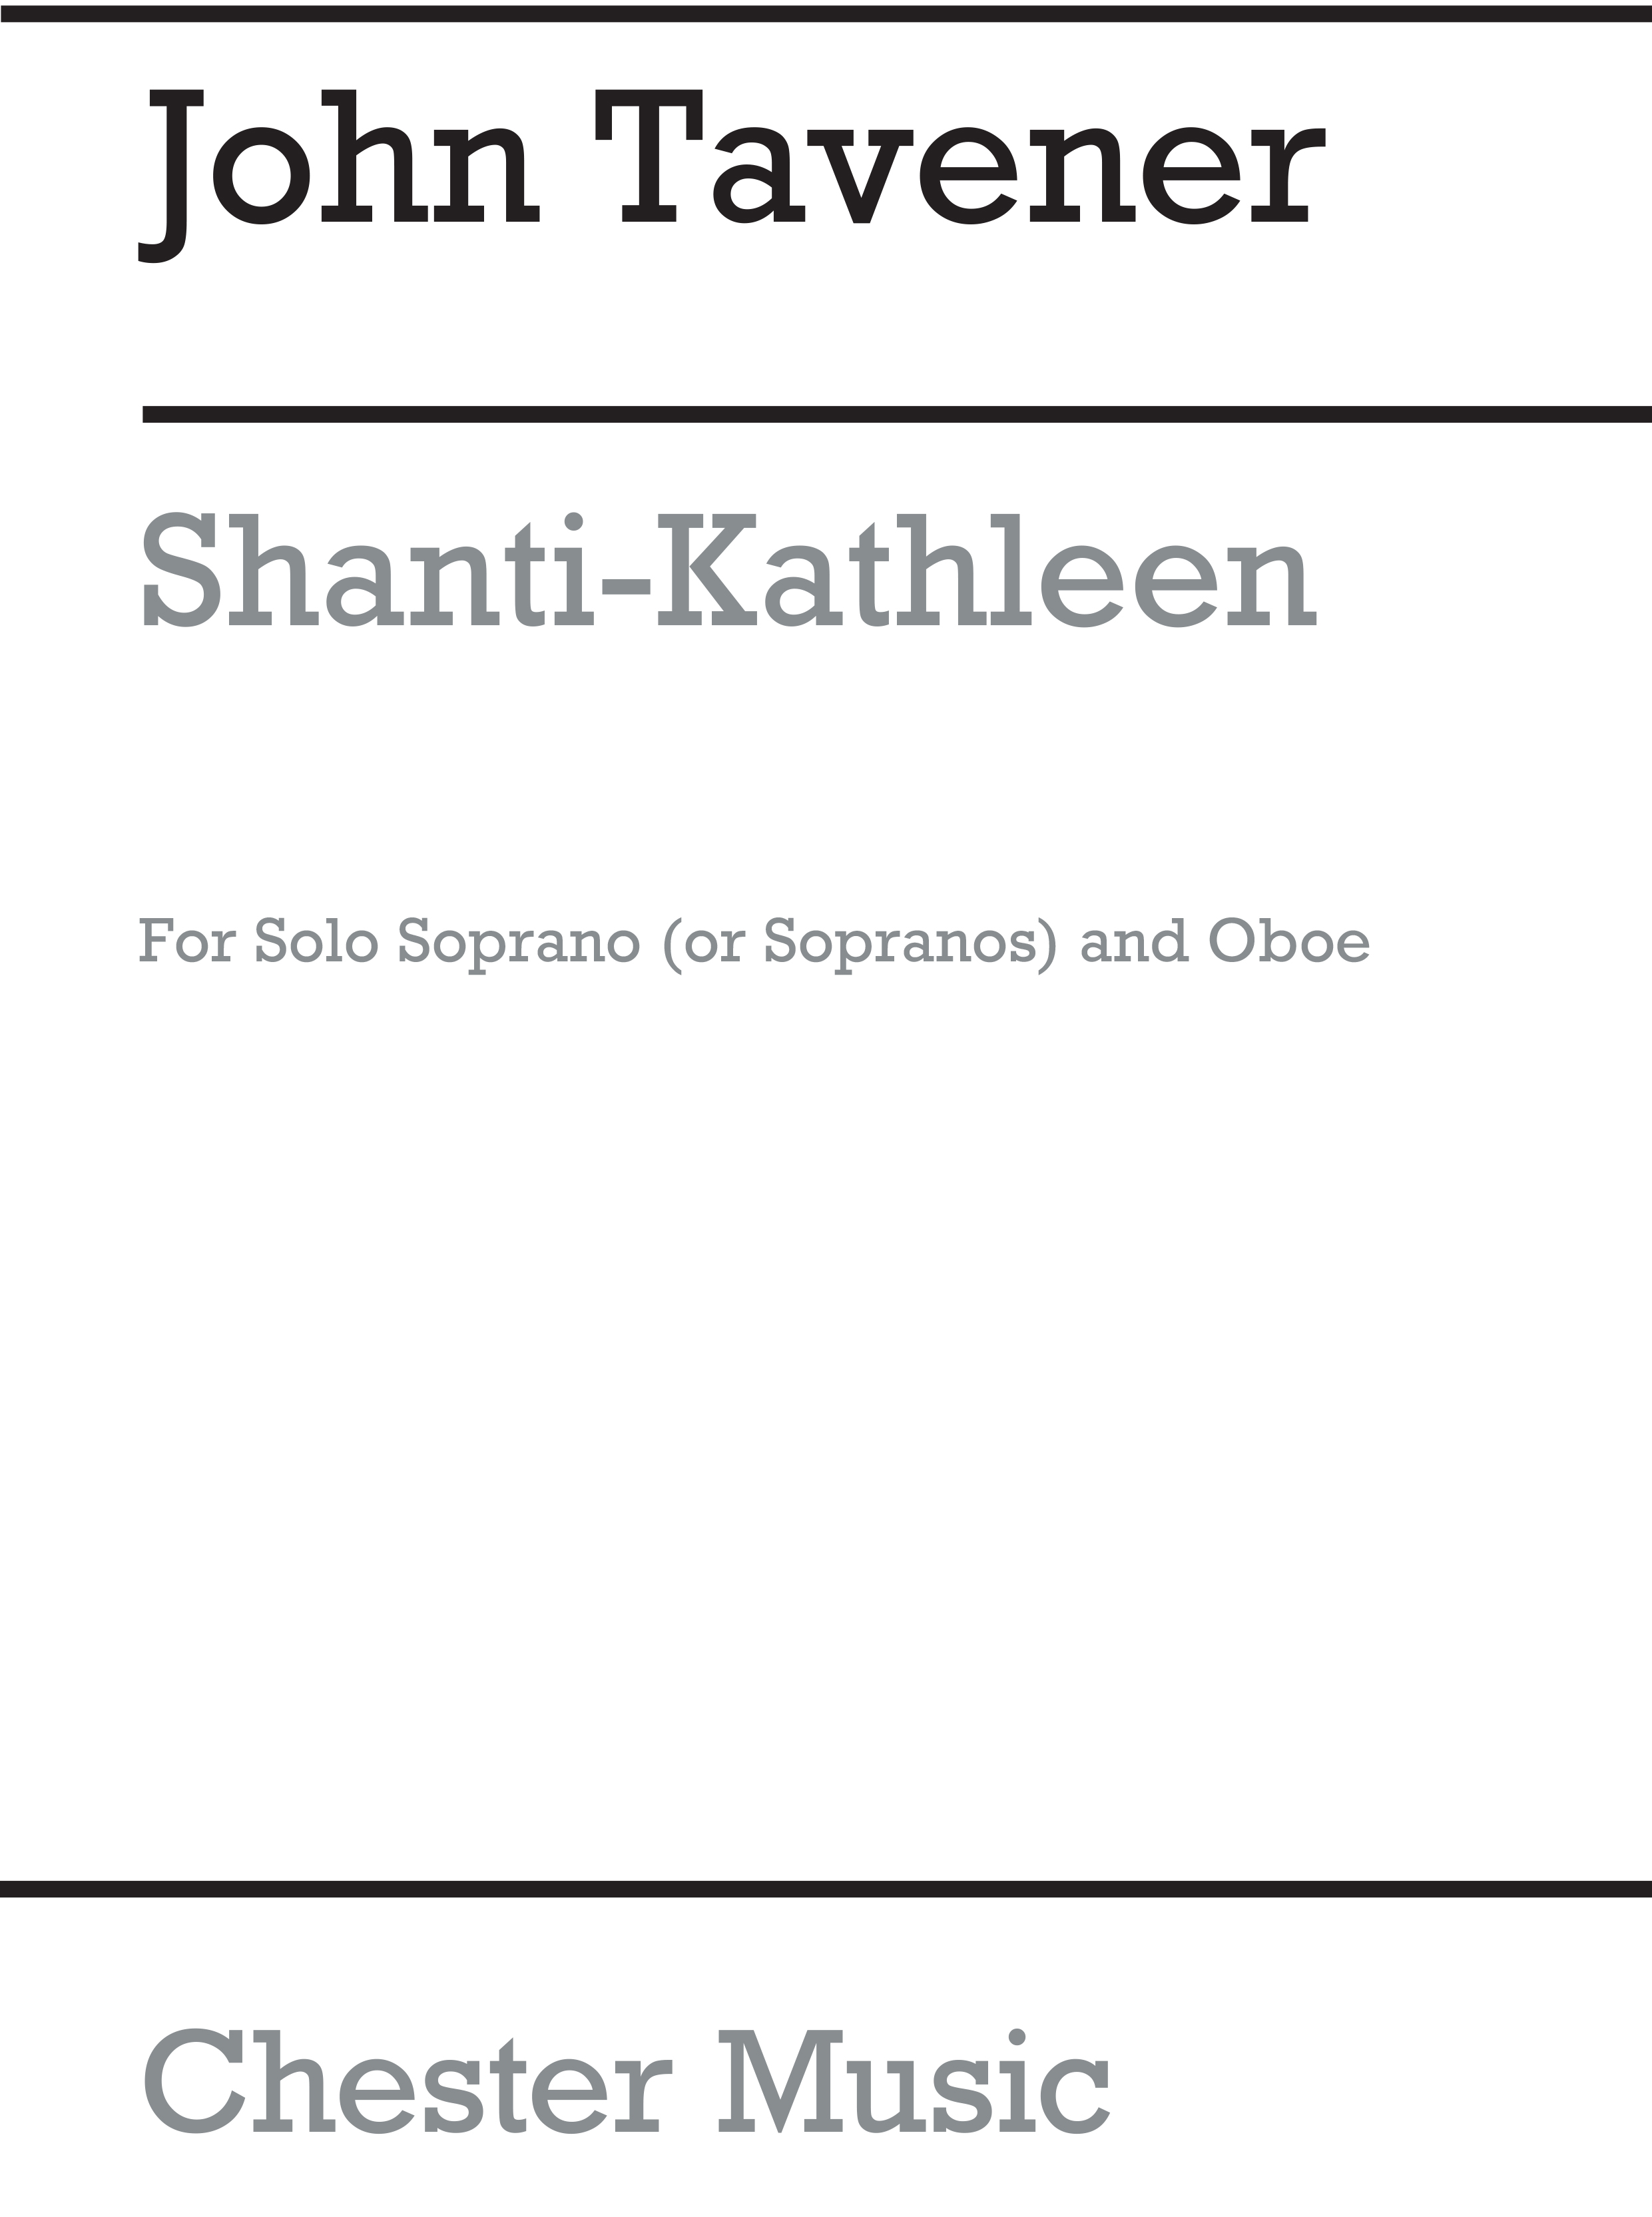 John Tavener: Shanti-kathleen: Soprano: Parts